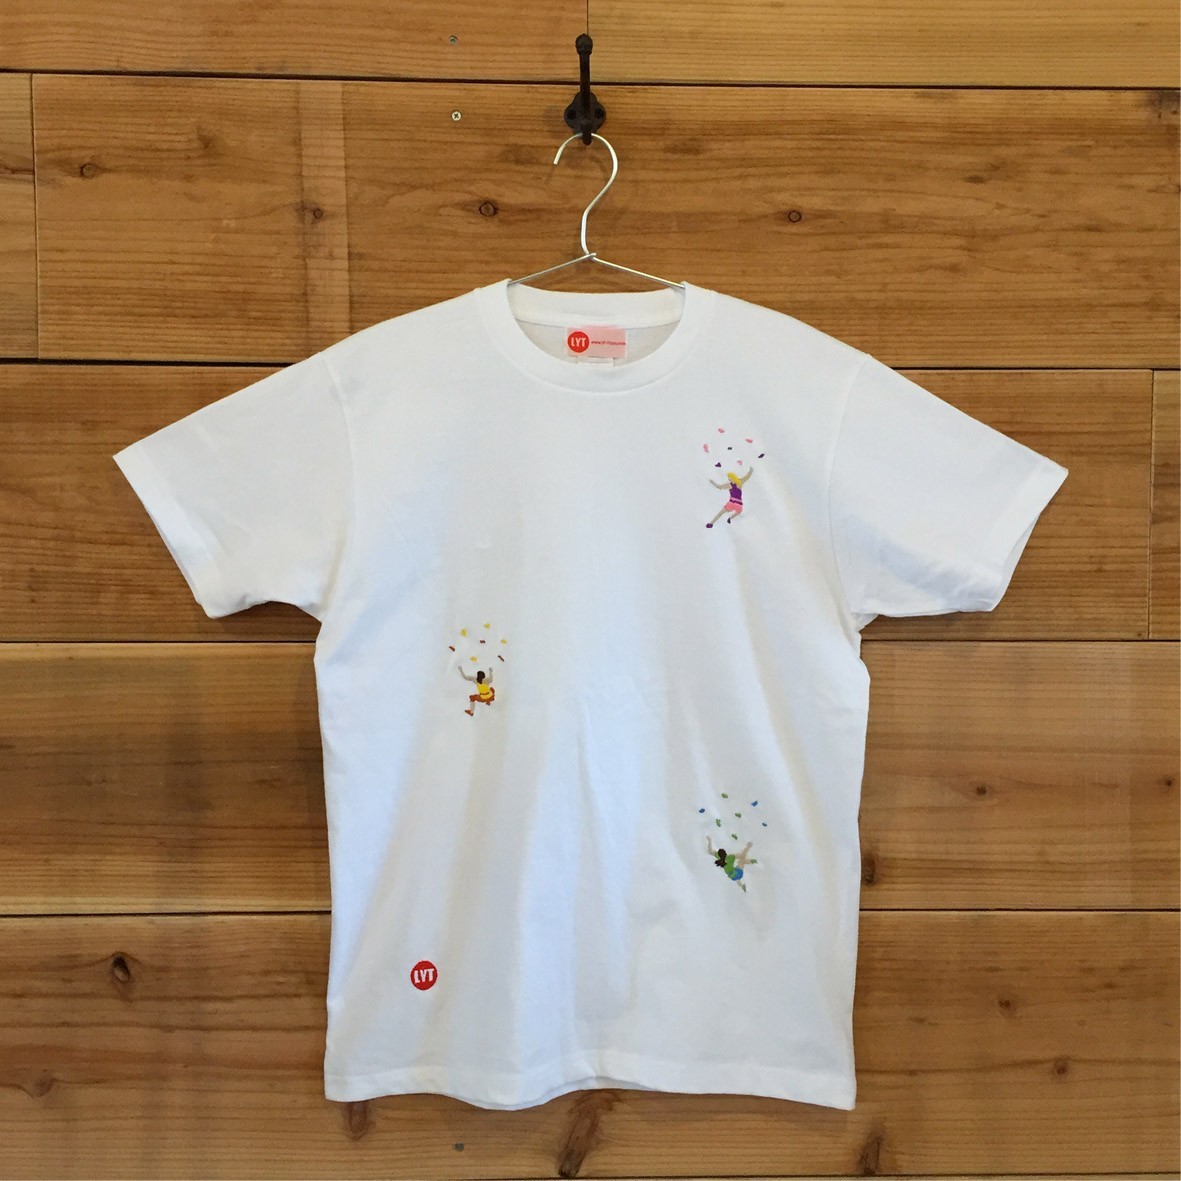 ボルダリング 刺繍 クルーネック Tシャツ Iichi ハンドメイド クラフト作品 手仕事品の通販